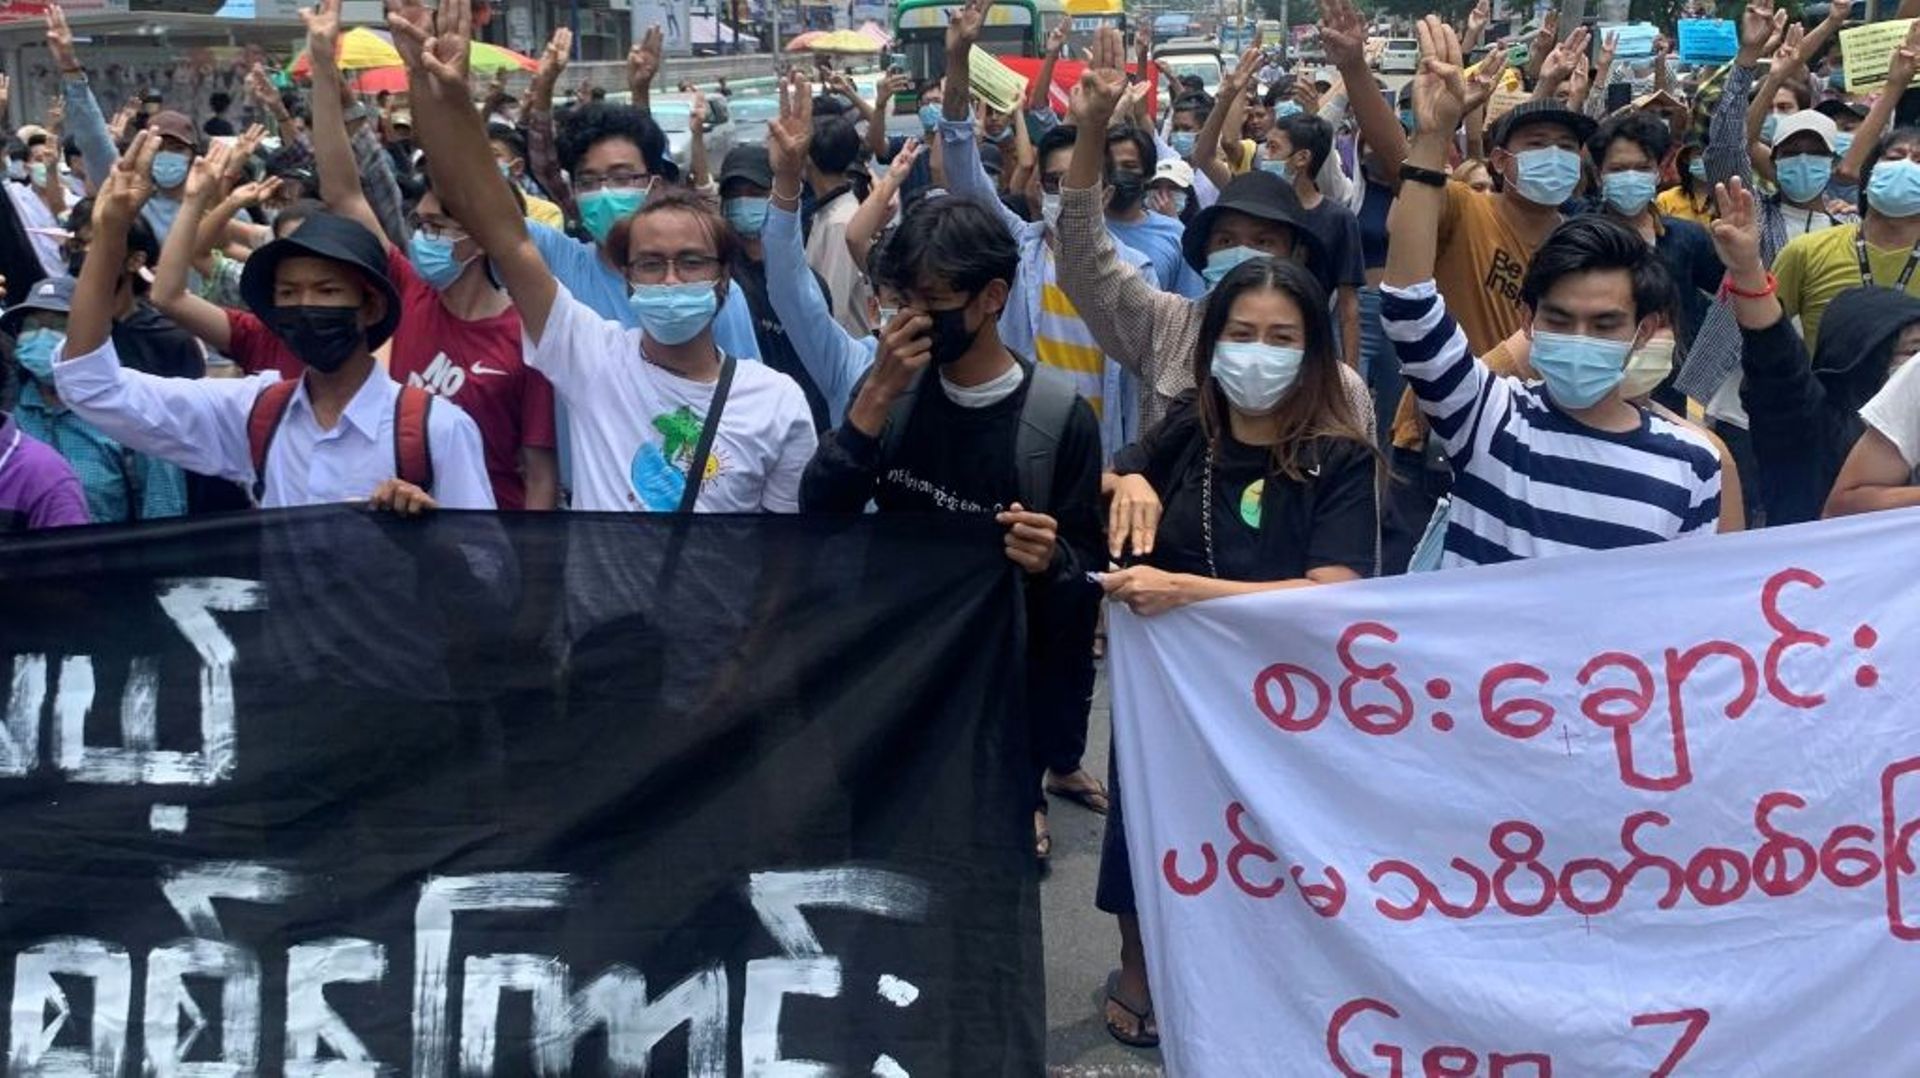 Des manifestants font le salut à trois doigts en défilant contre le coup d'Etat militaire en Birmanie, dans le quartier de Tarmwe à Rangoun le 26 avril 2021